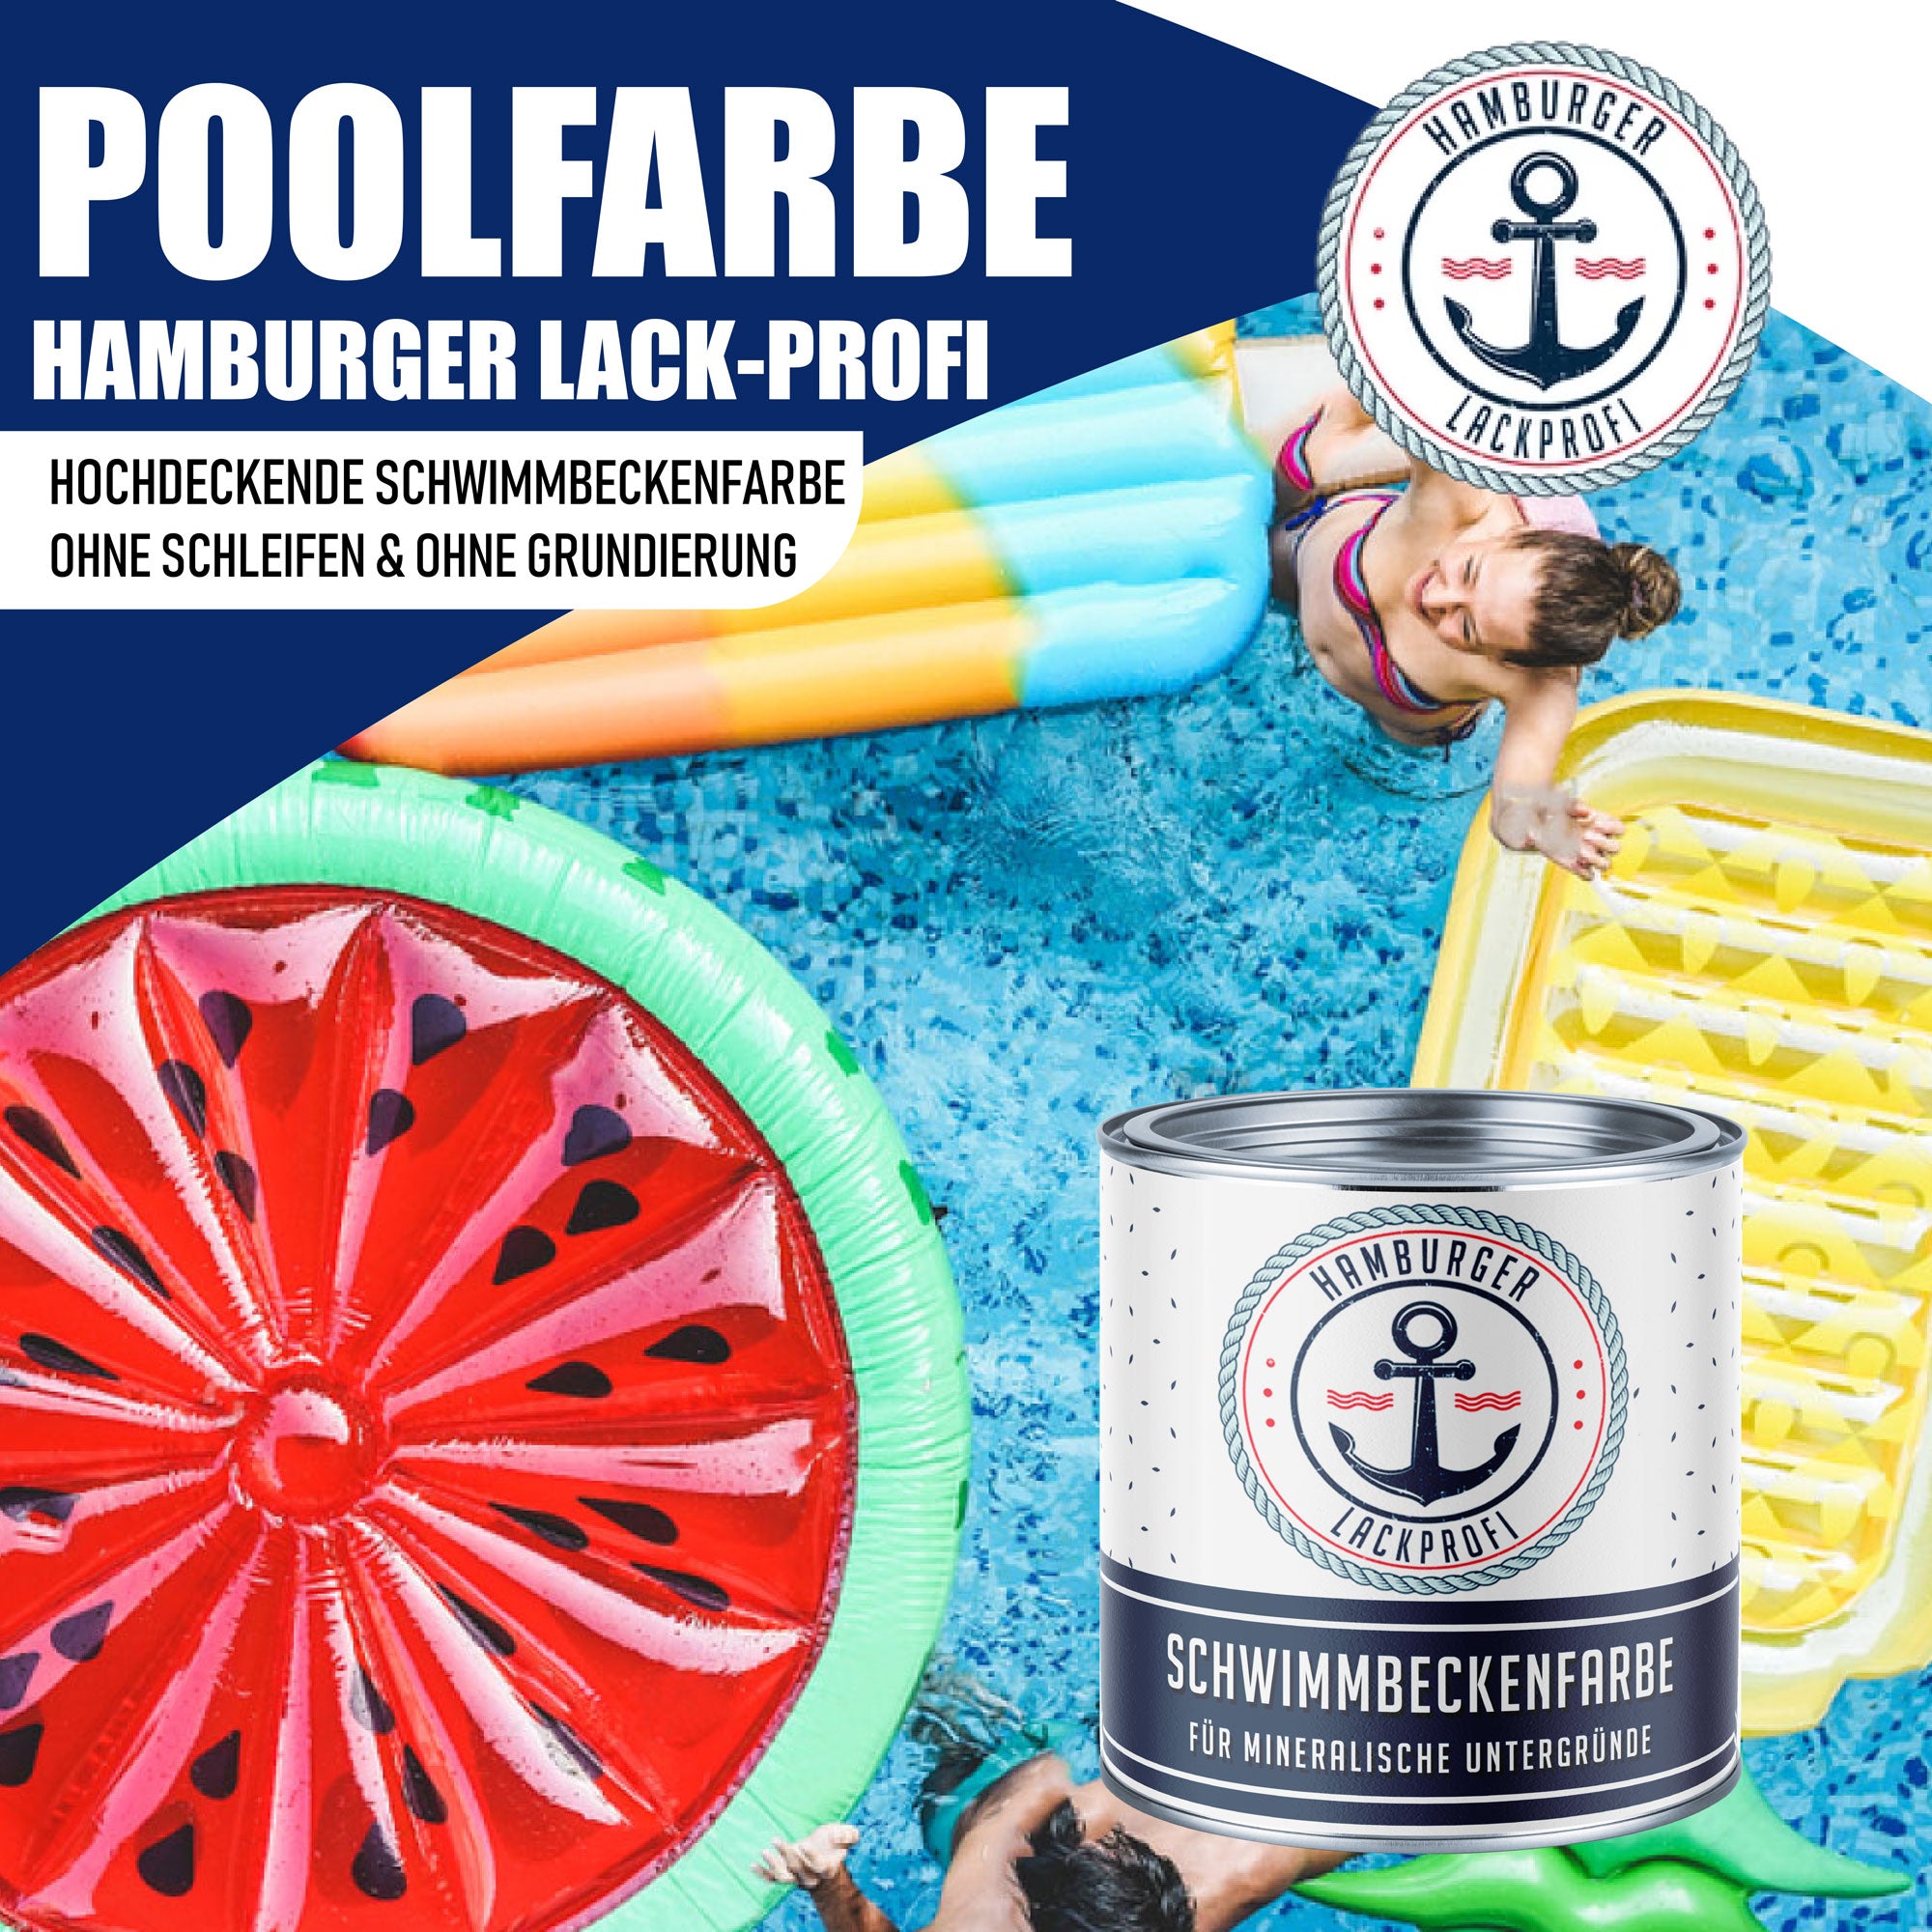 Hamburger Lack-Profi Schwimmbeckenfarbe Schwefelgelb RAL 1016 - hochdeckende Poolfarbe